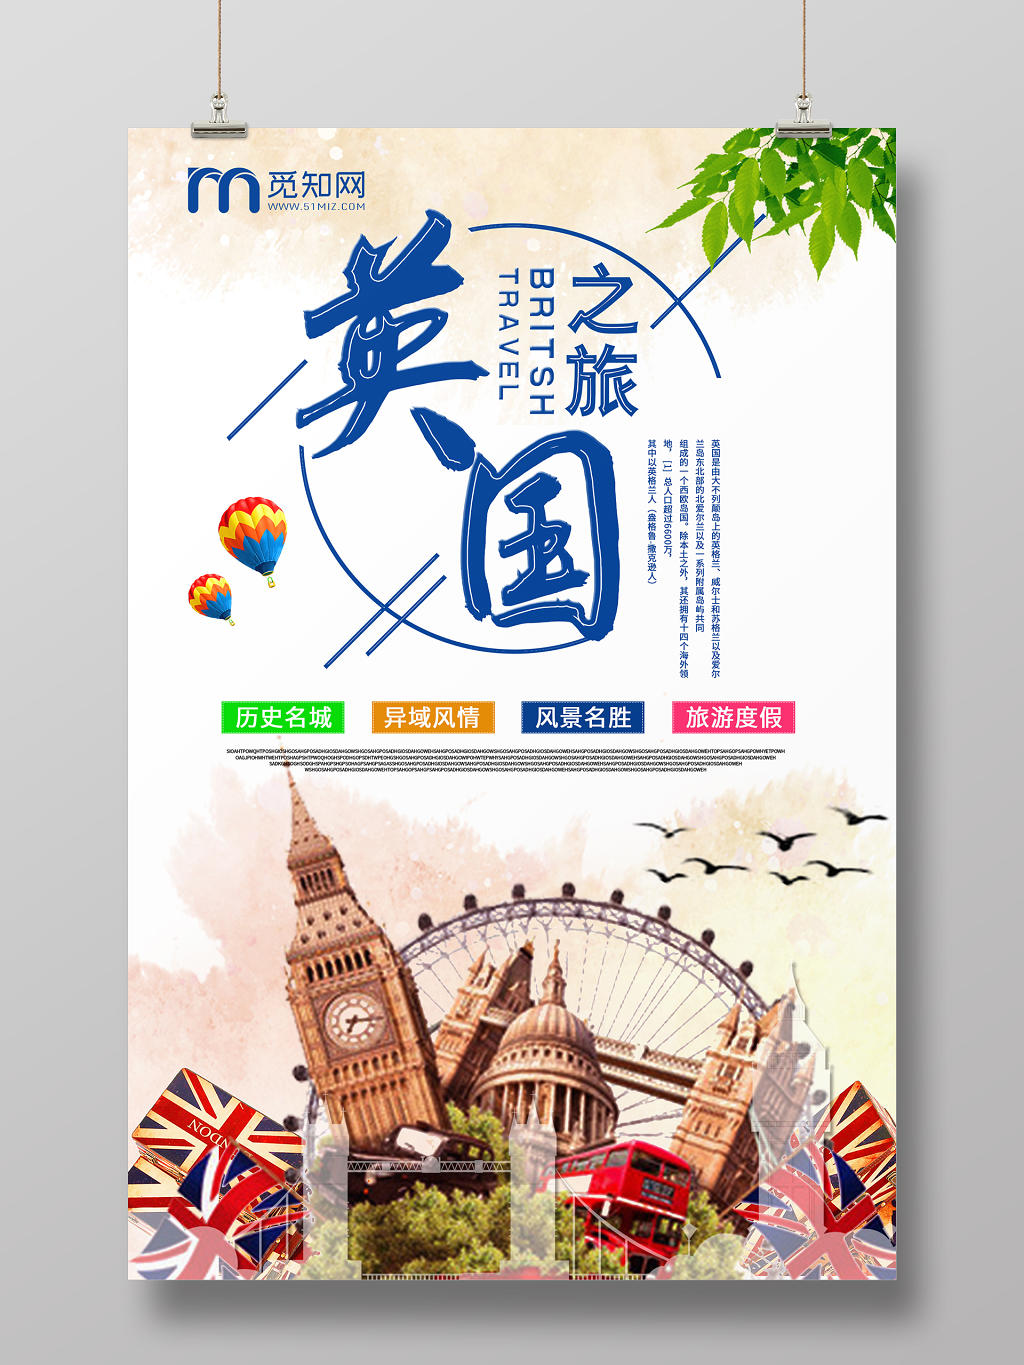 简约大气白色系英国之旅旅游欧洲英国旅游海报